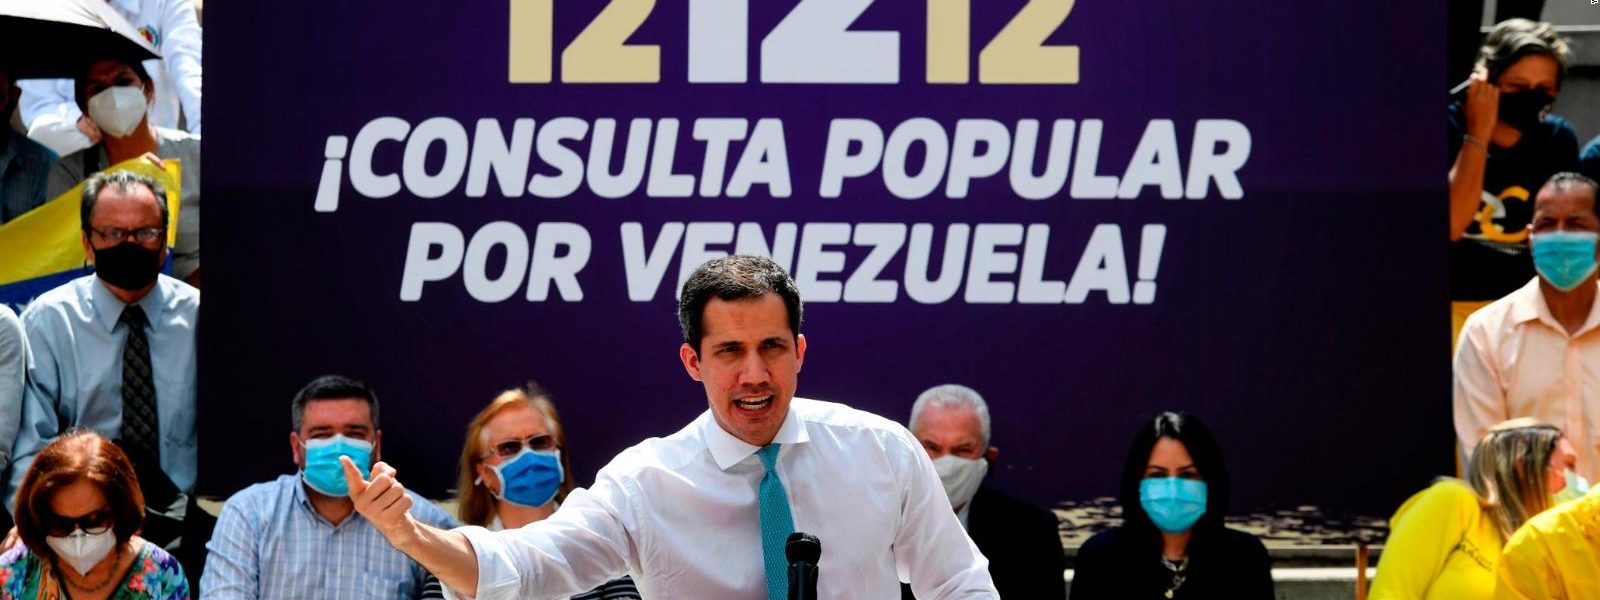 ¿Se suicidó la oposición venezolana?